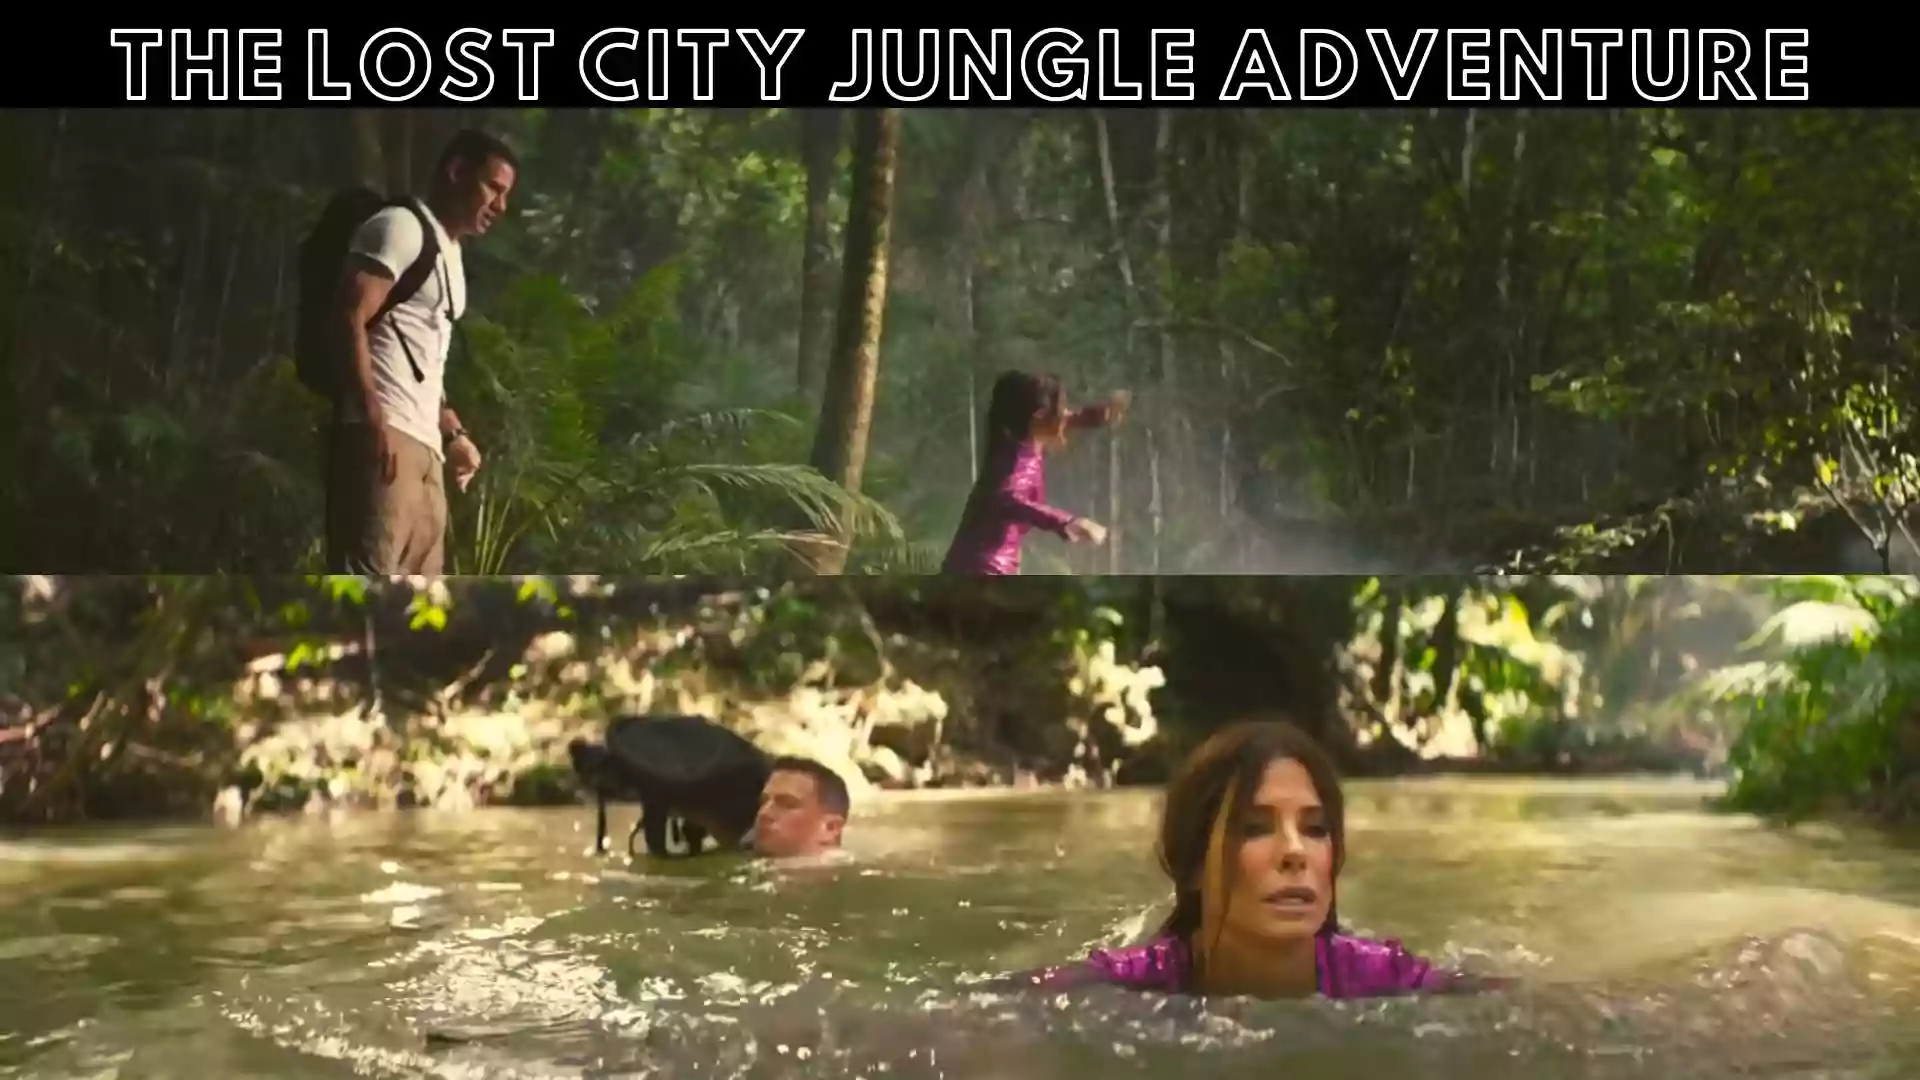 The Lost City Jungle Adventure | The Lost City Adventure